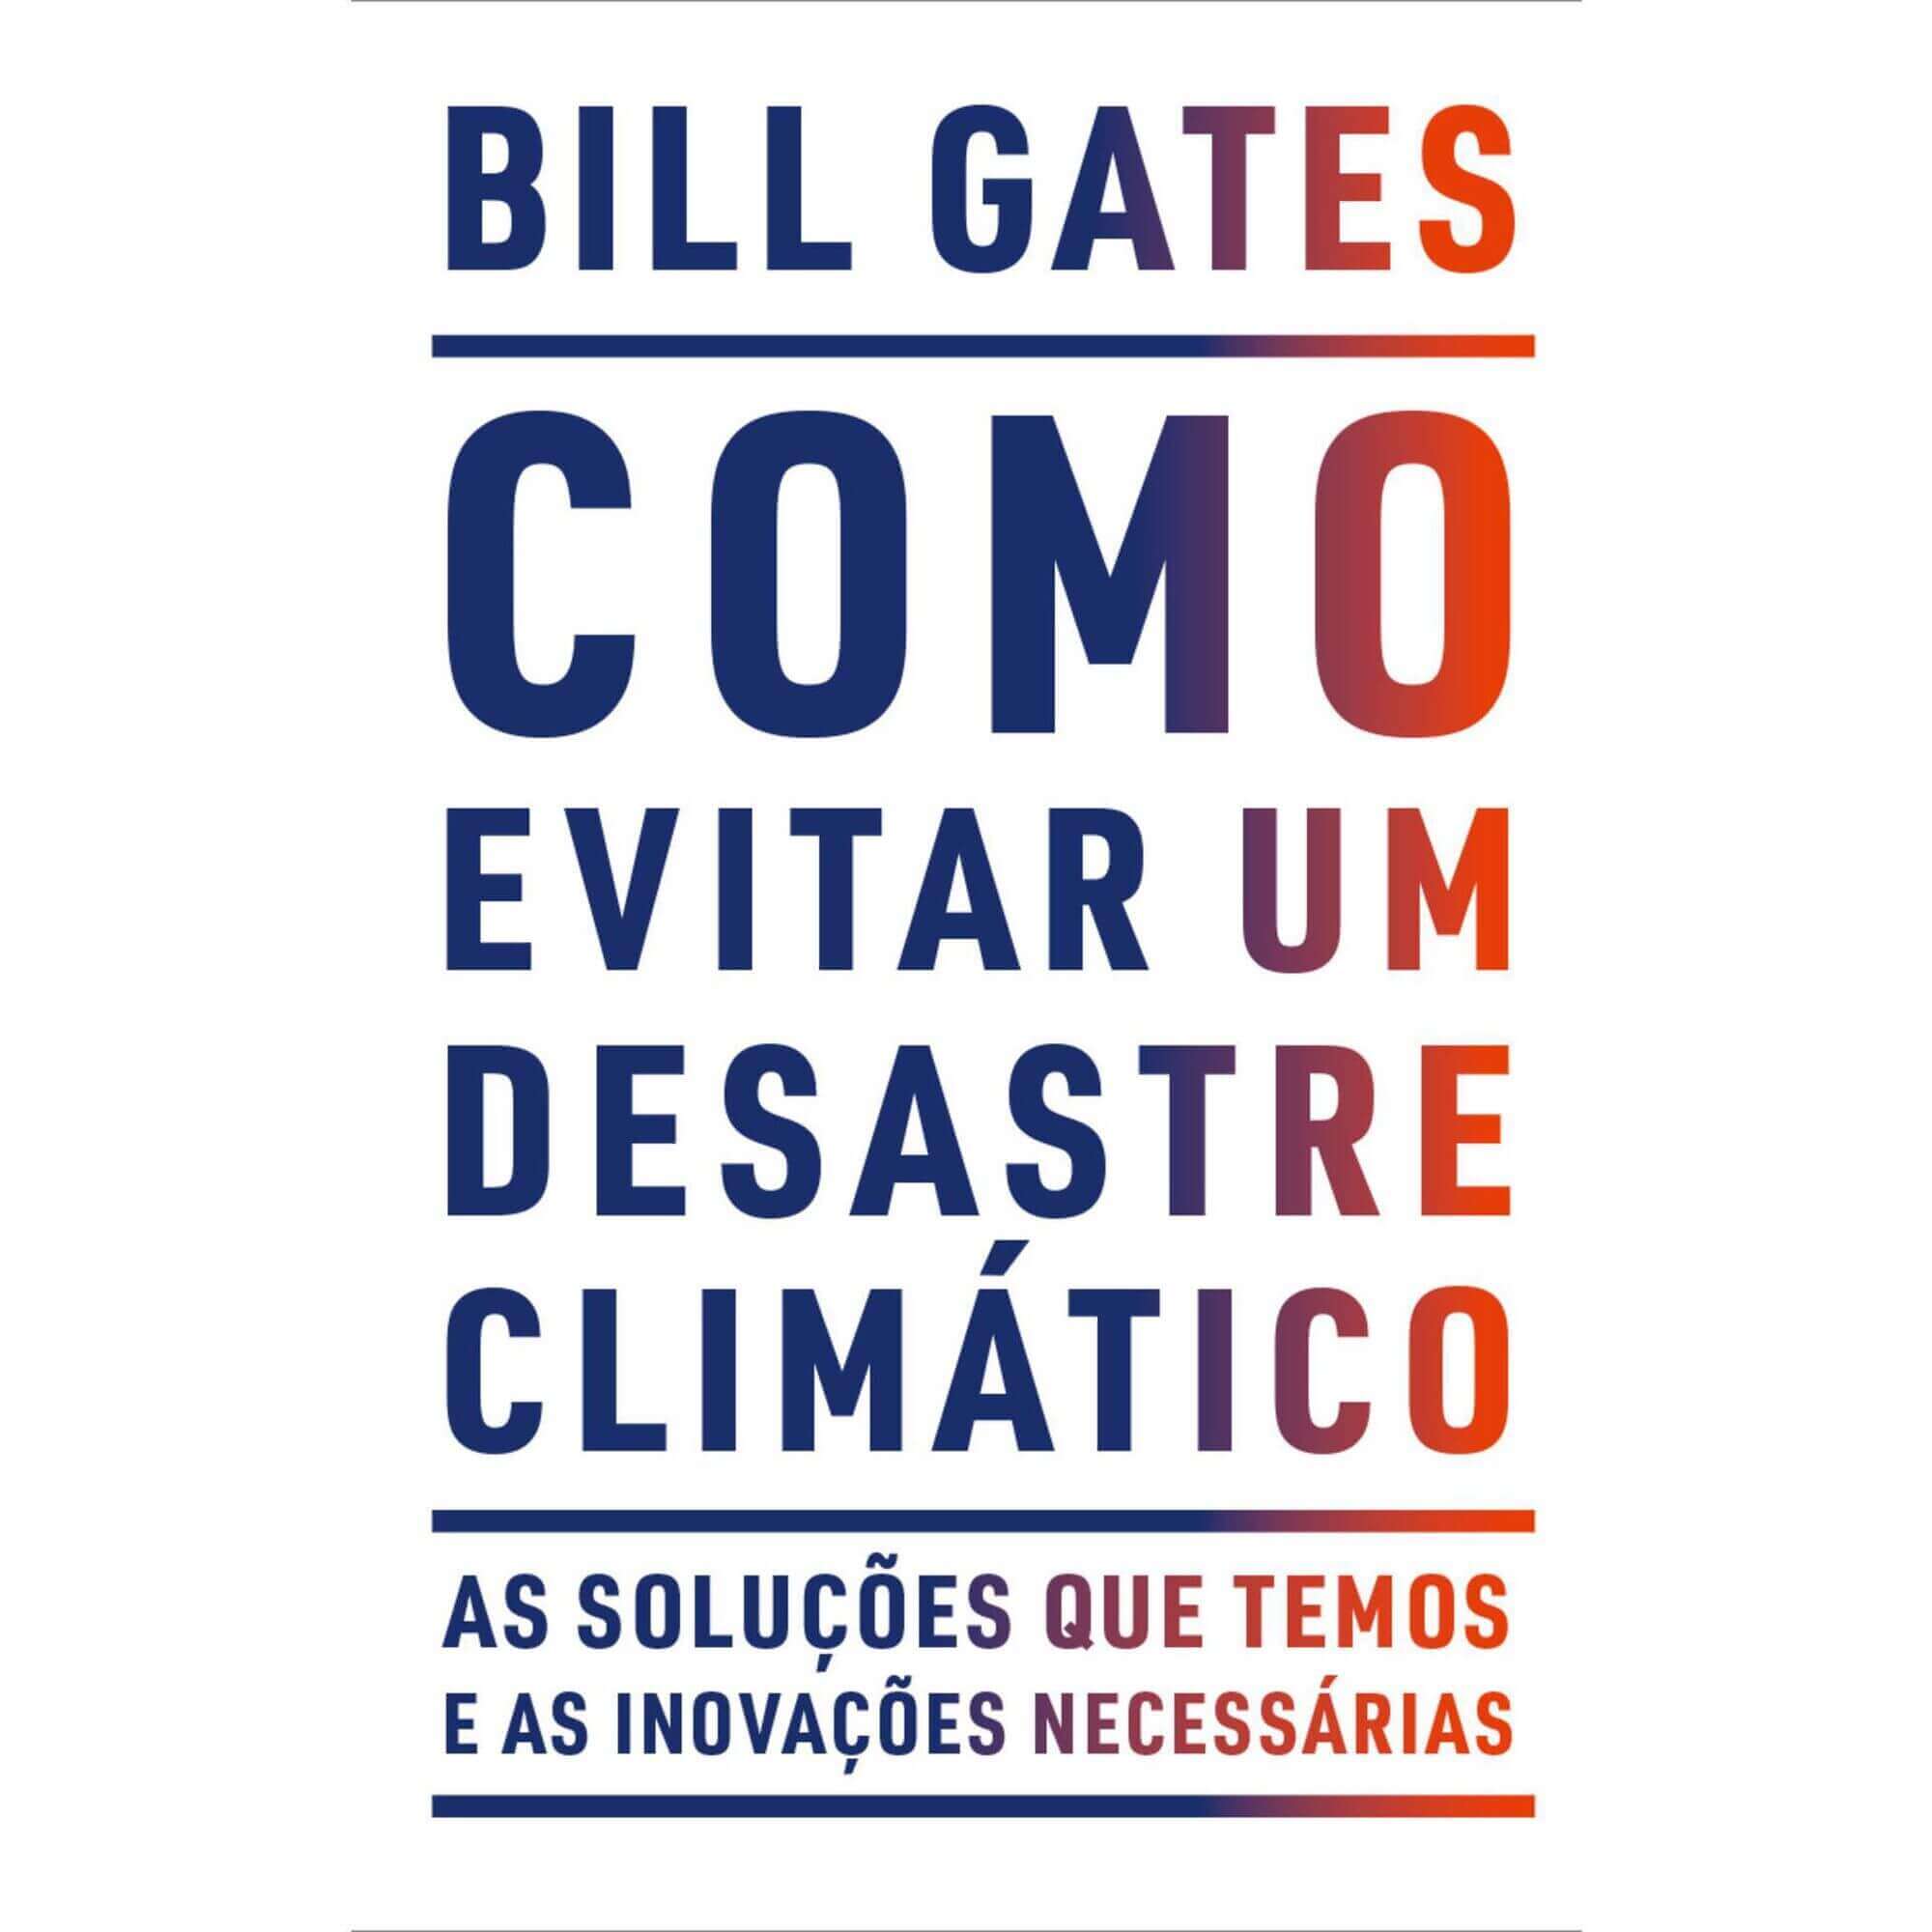 Capa do livro como evitar um desastre climático de Bill gates